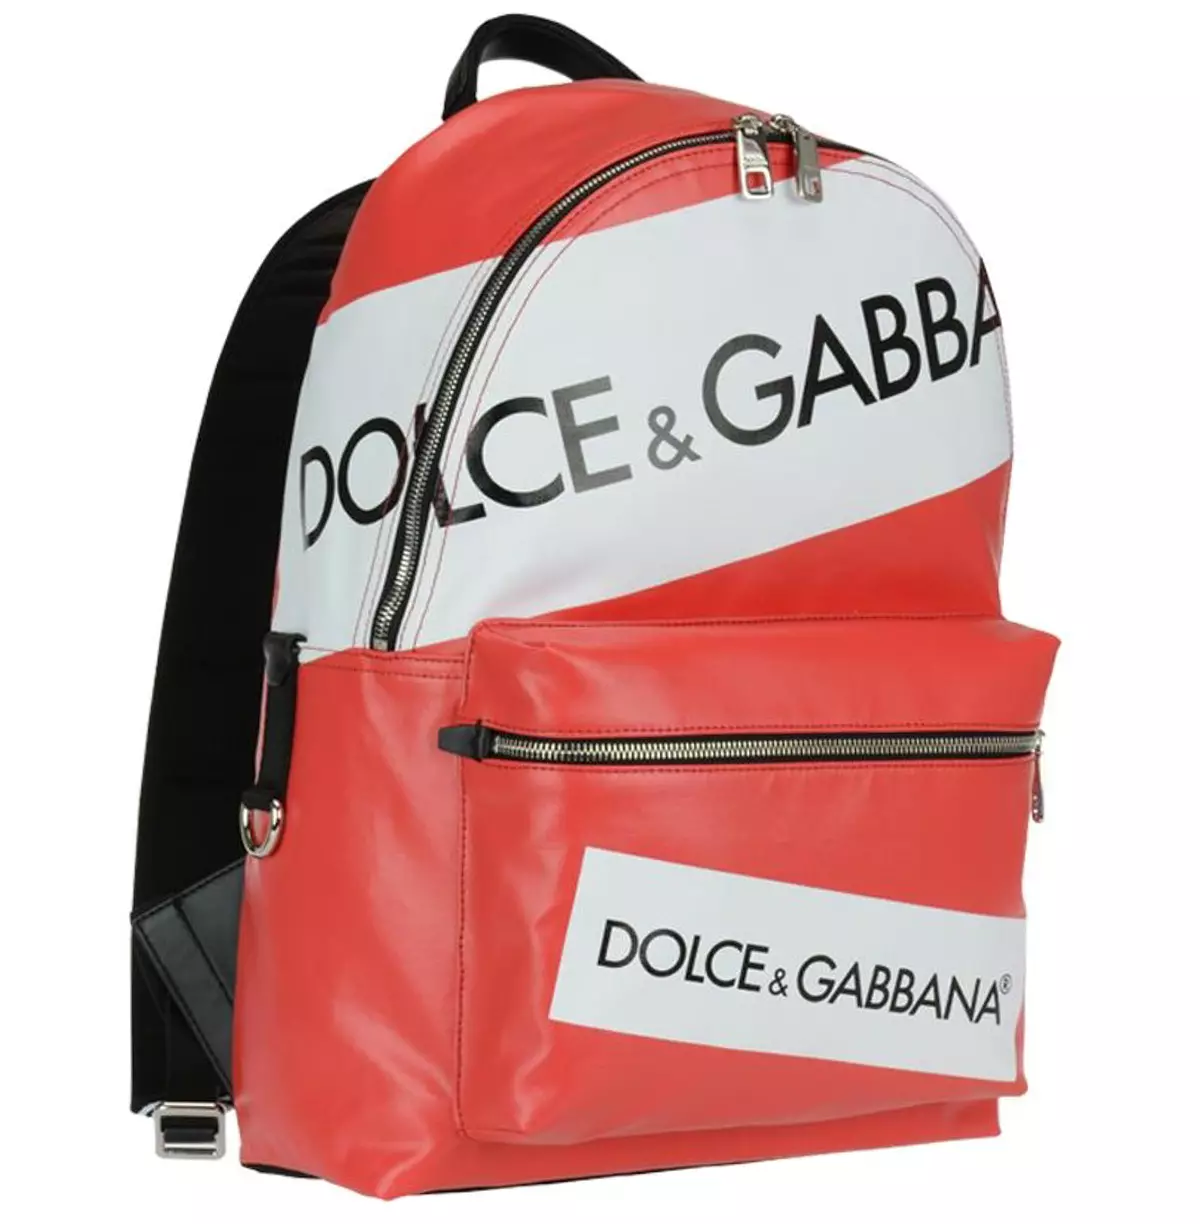 Dolce & Gabbana Ryggsäckar: Kvinna och Mäns, Svart och Röd, Läder Ryggsäckar Väskor och andra modeller. Hur skiljer du originalet från kopian? 2559_8